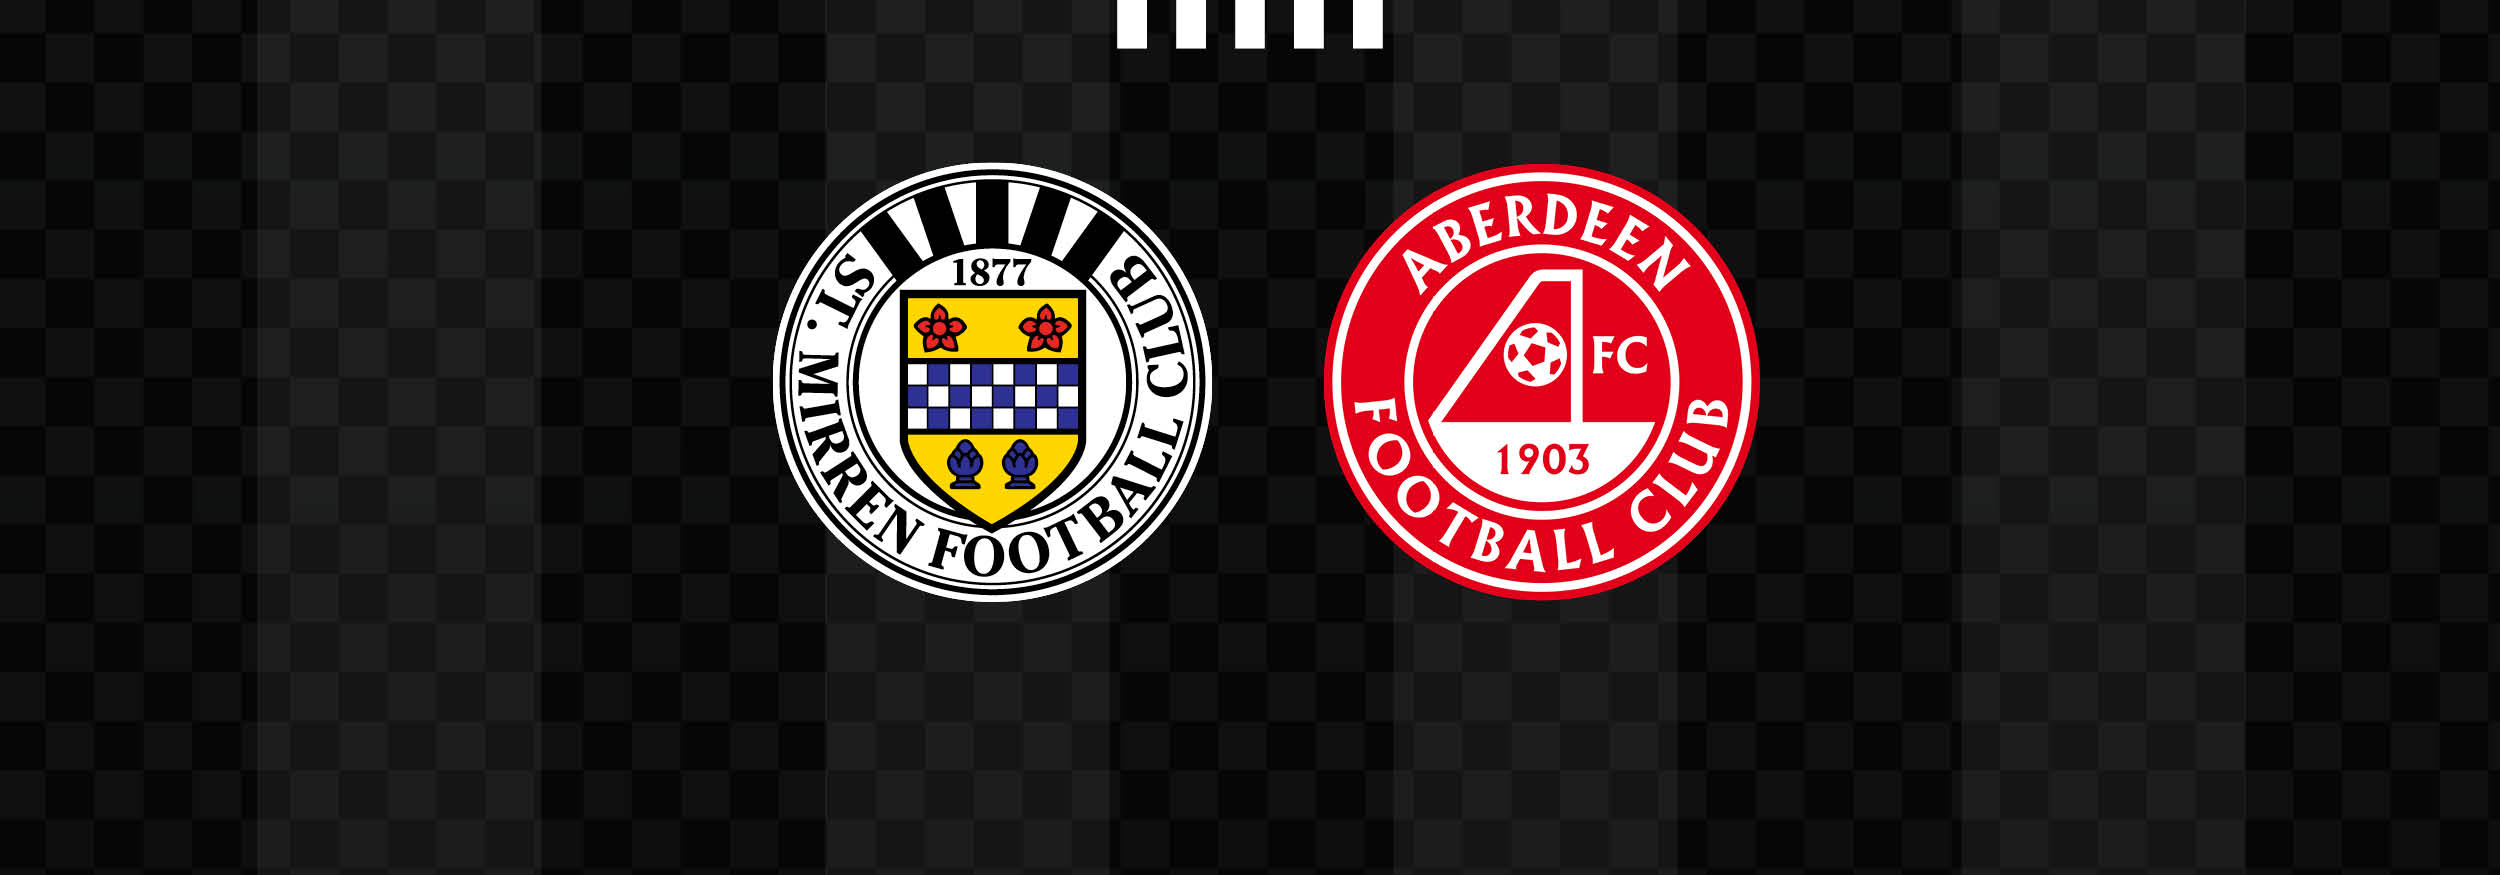 Matchday Info: St Mirren v Aberdeen (2nd Mar)